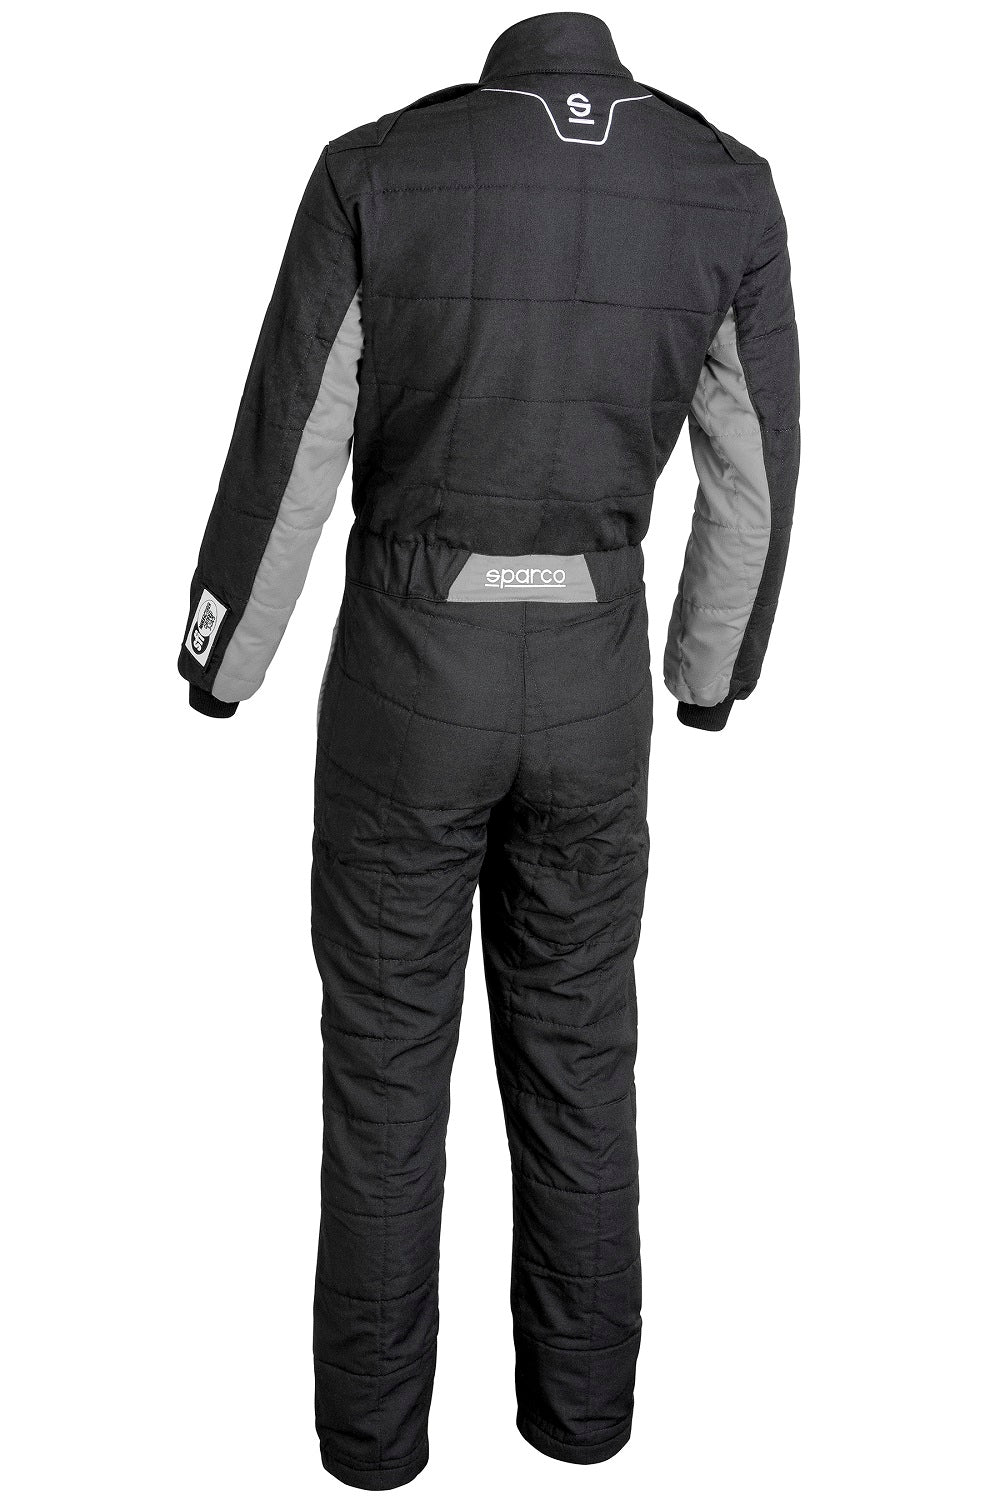 Sparco Conquest 3.0 Race Suit Black / Grey Rear Image